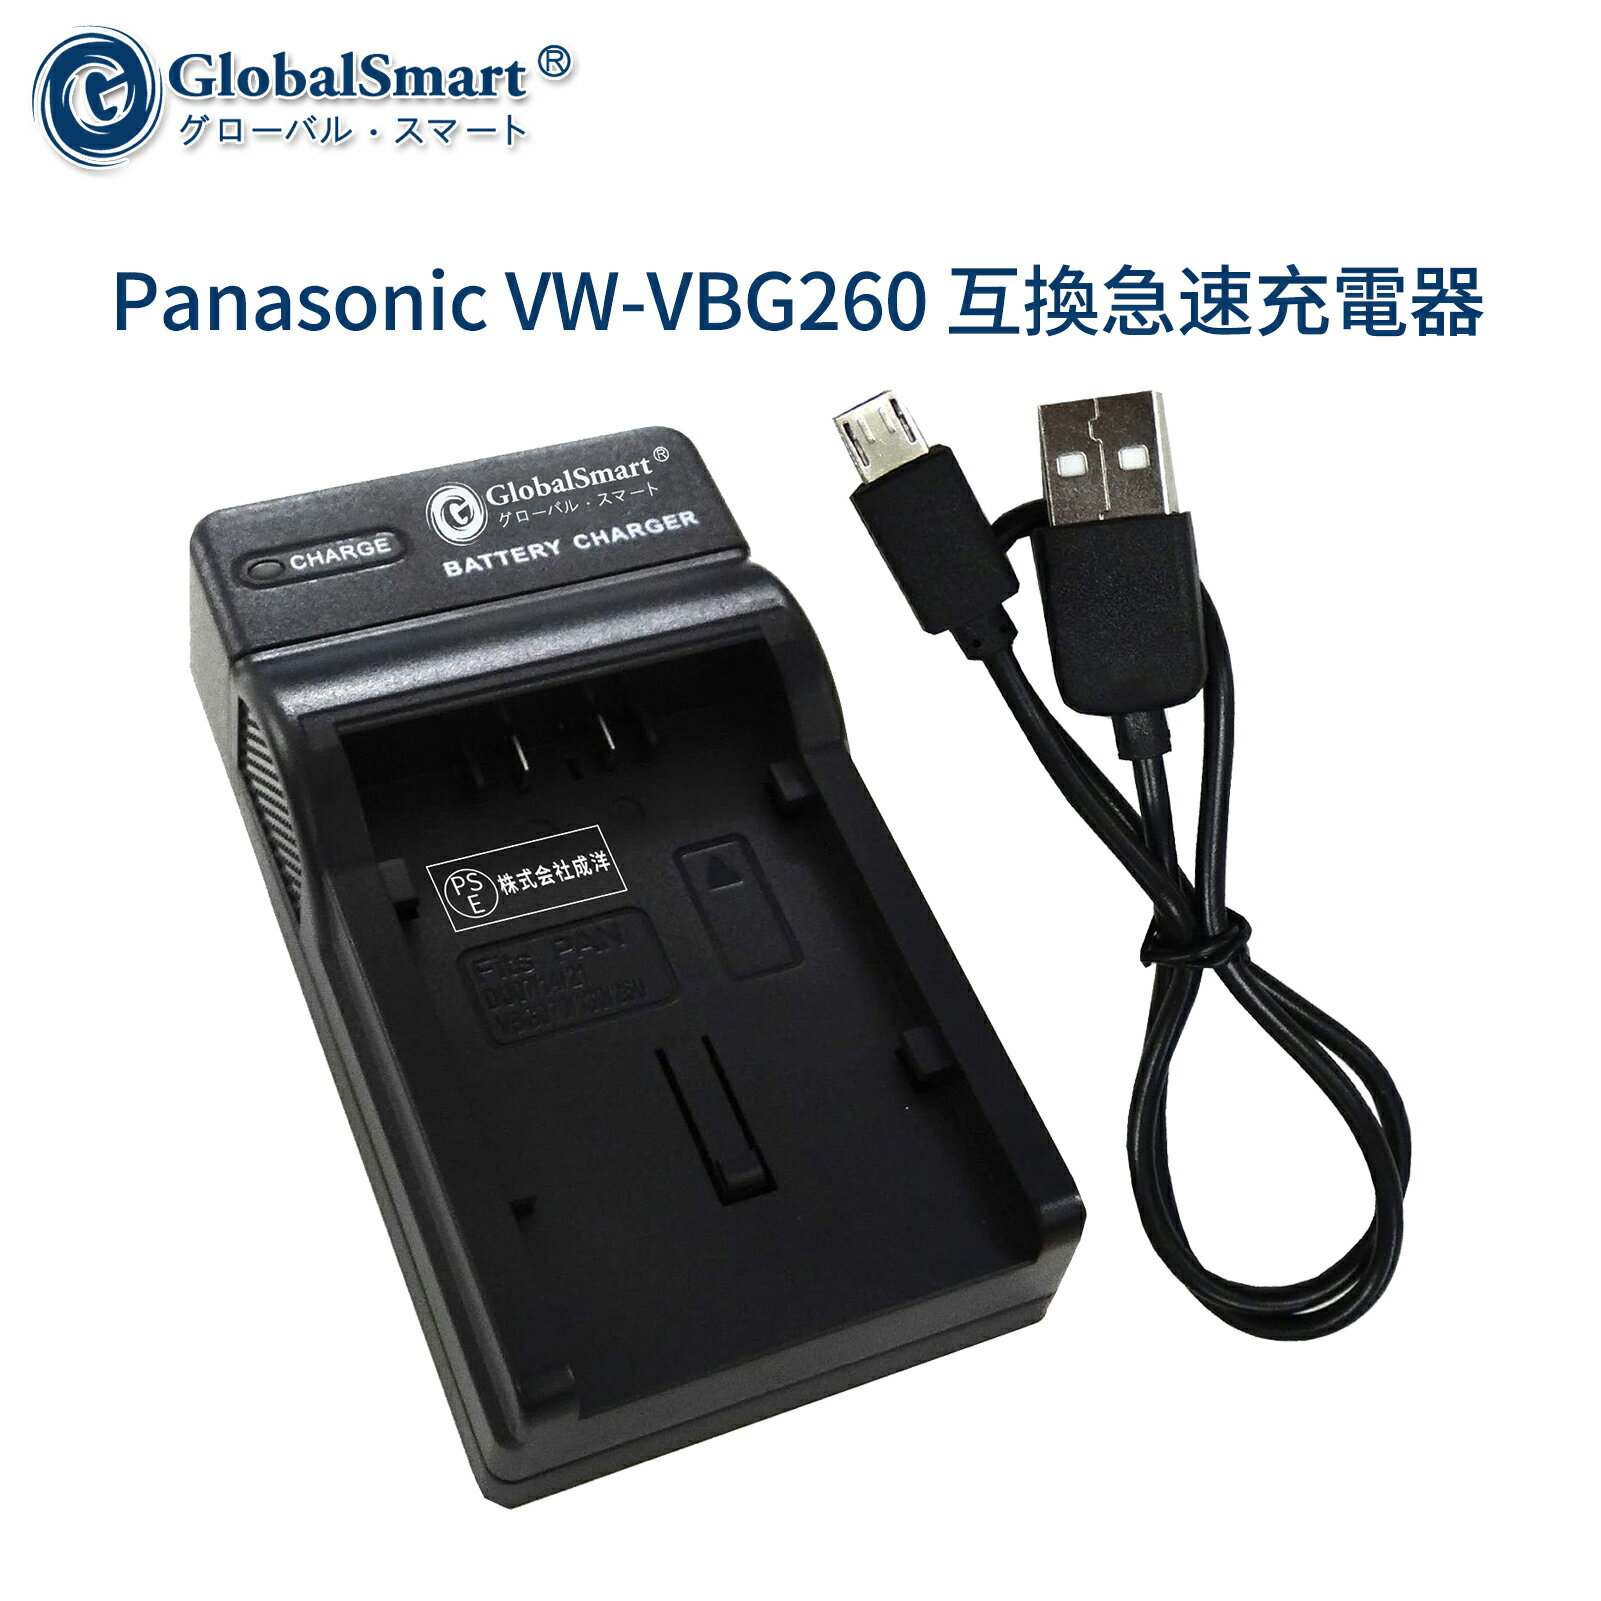 【1年保証】Panasonic VW-VBG260 互換急速充電器USBチャージャー 【PSE認定済】 カメラバッテリー互換チャージャー【GlobalSmart】【日本国内倉庫発送】【送料無料】